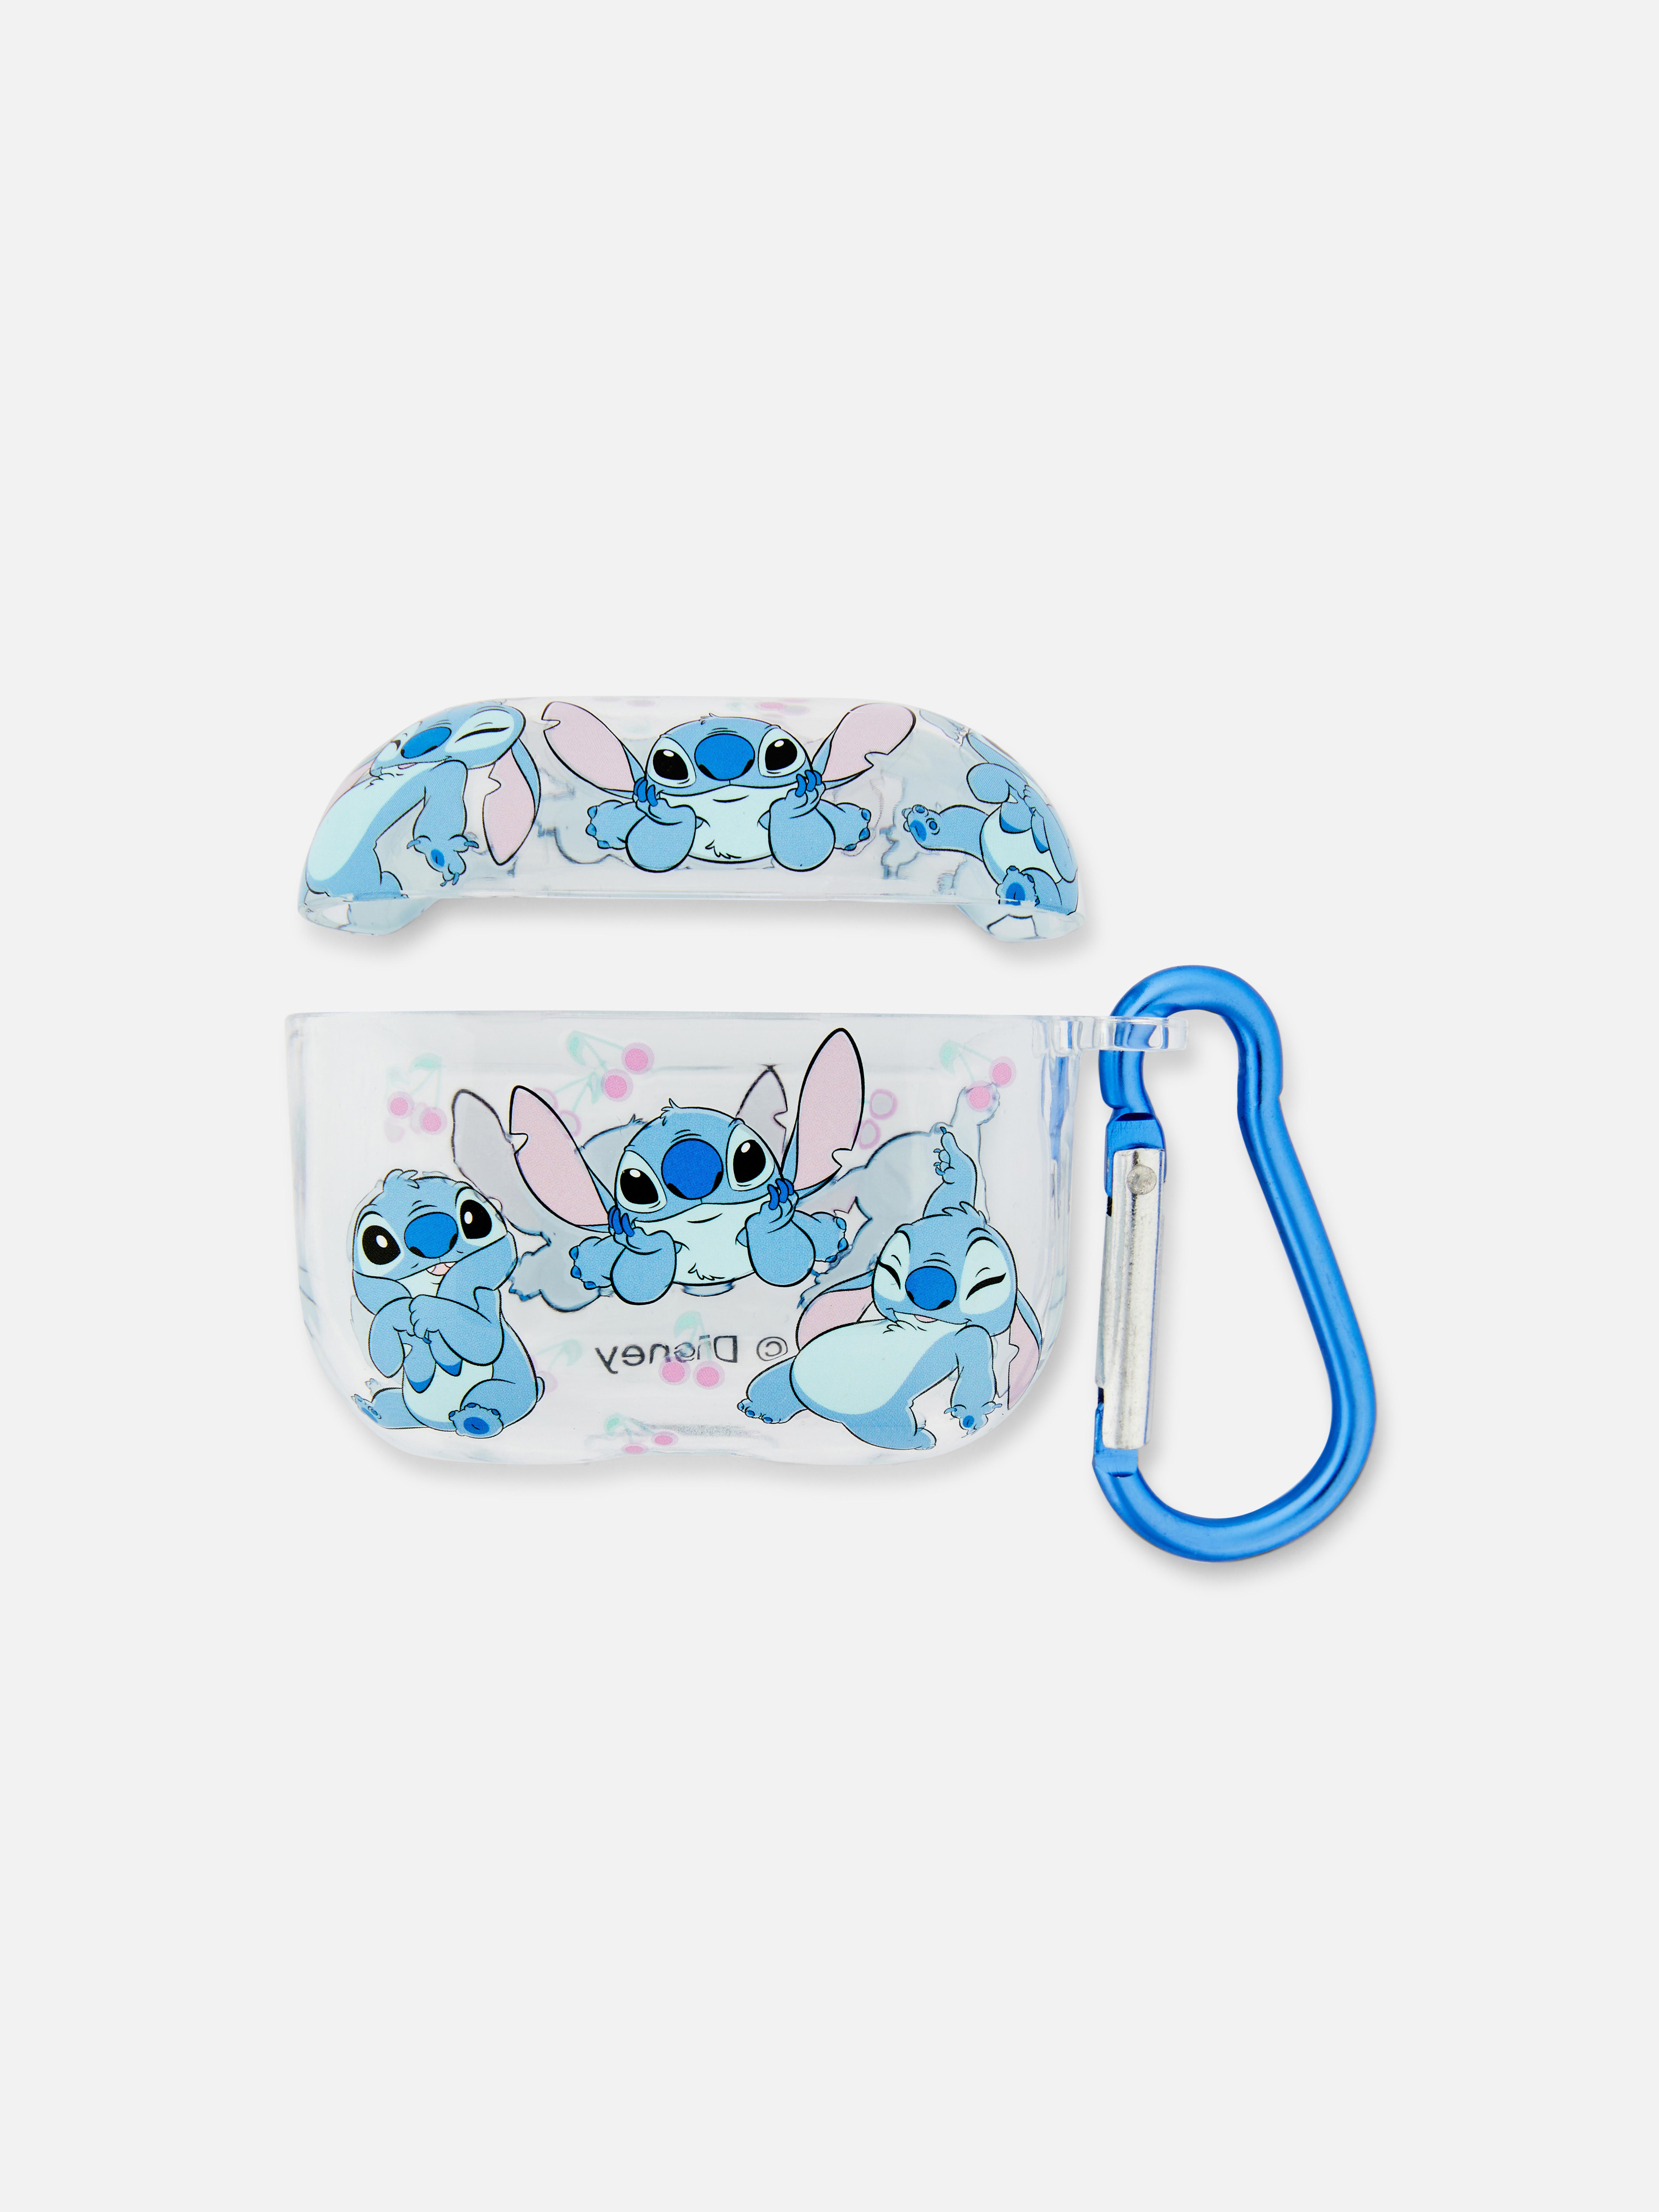 Caixa auriculares sem fios Disney Lilo & Stitch